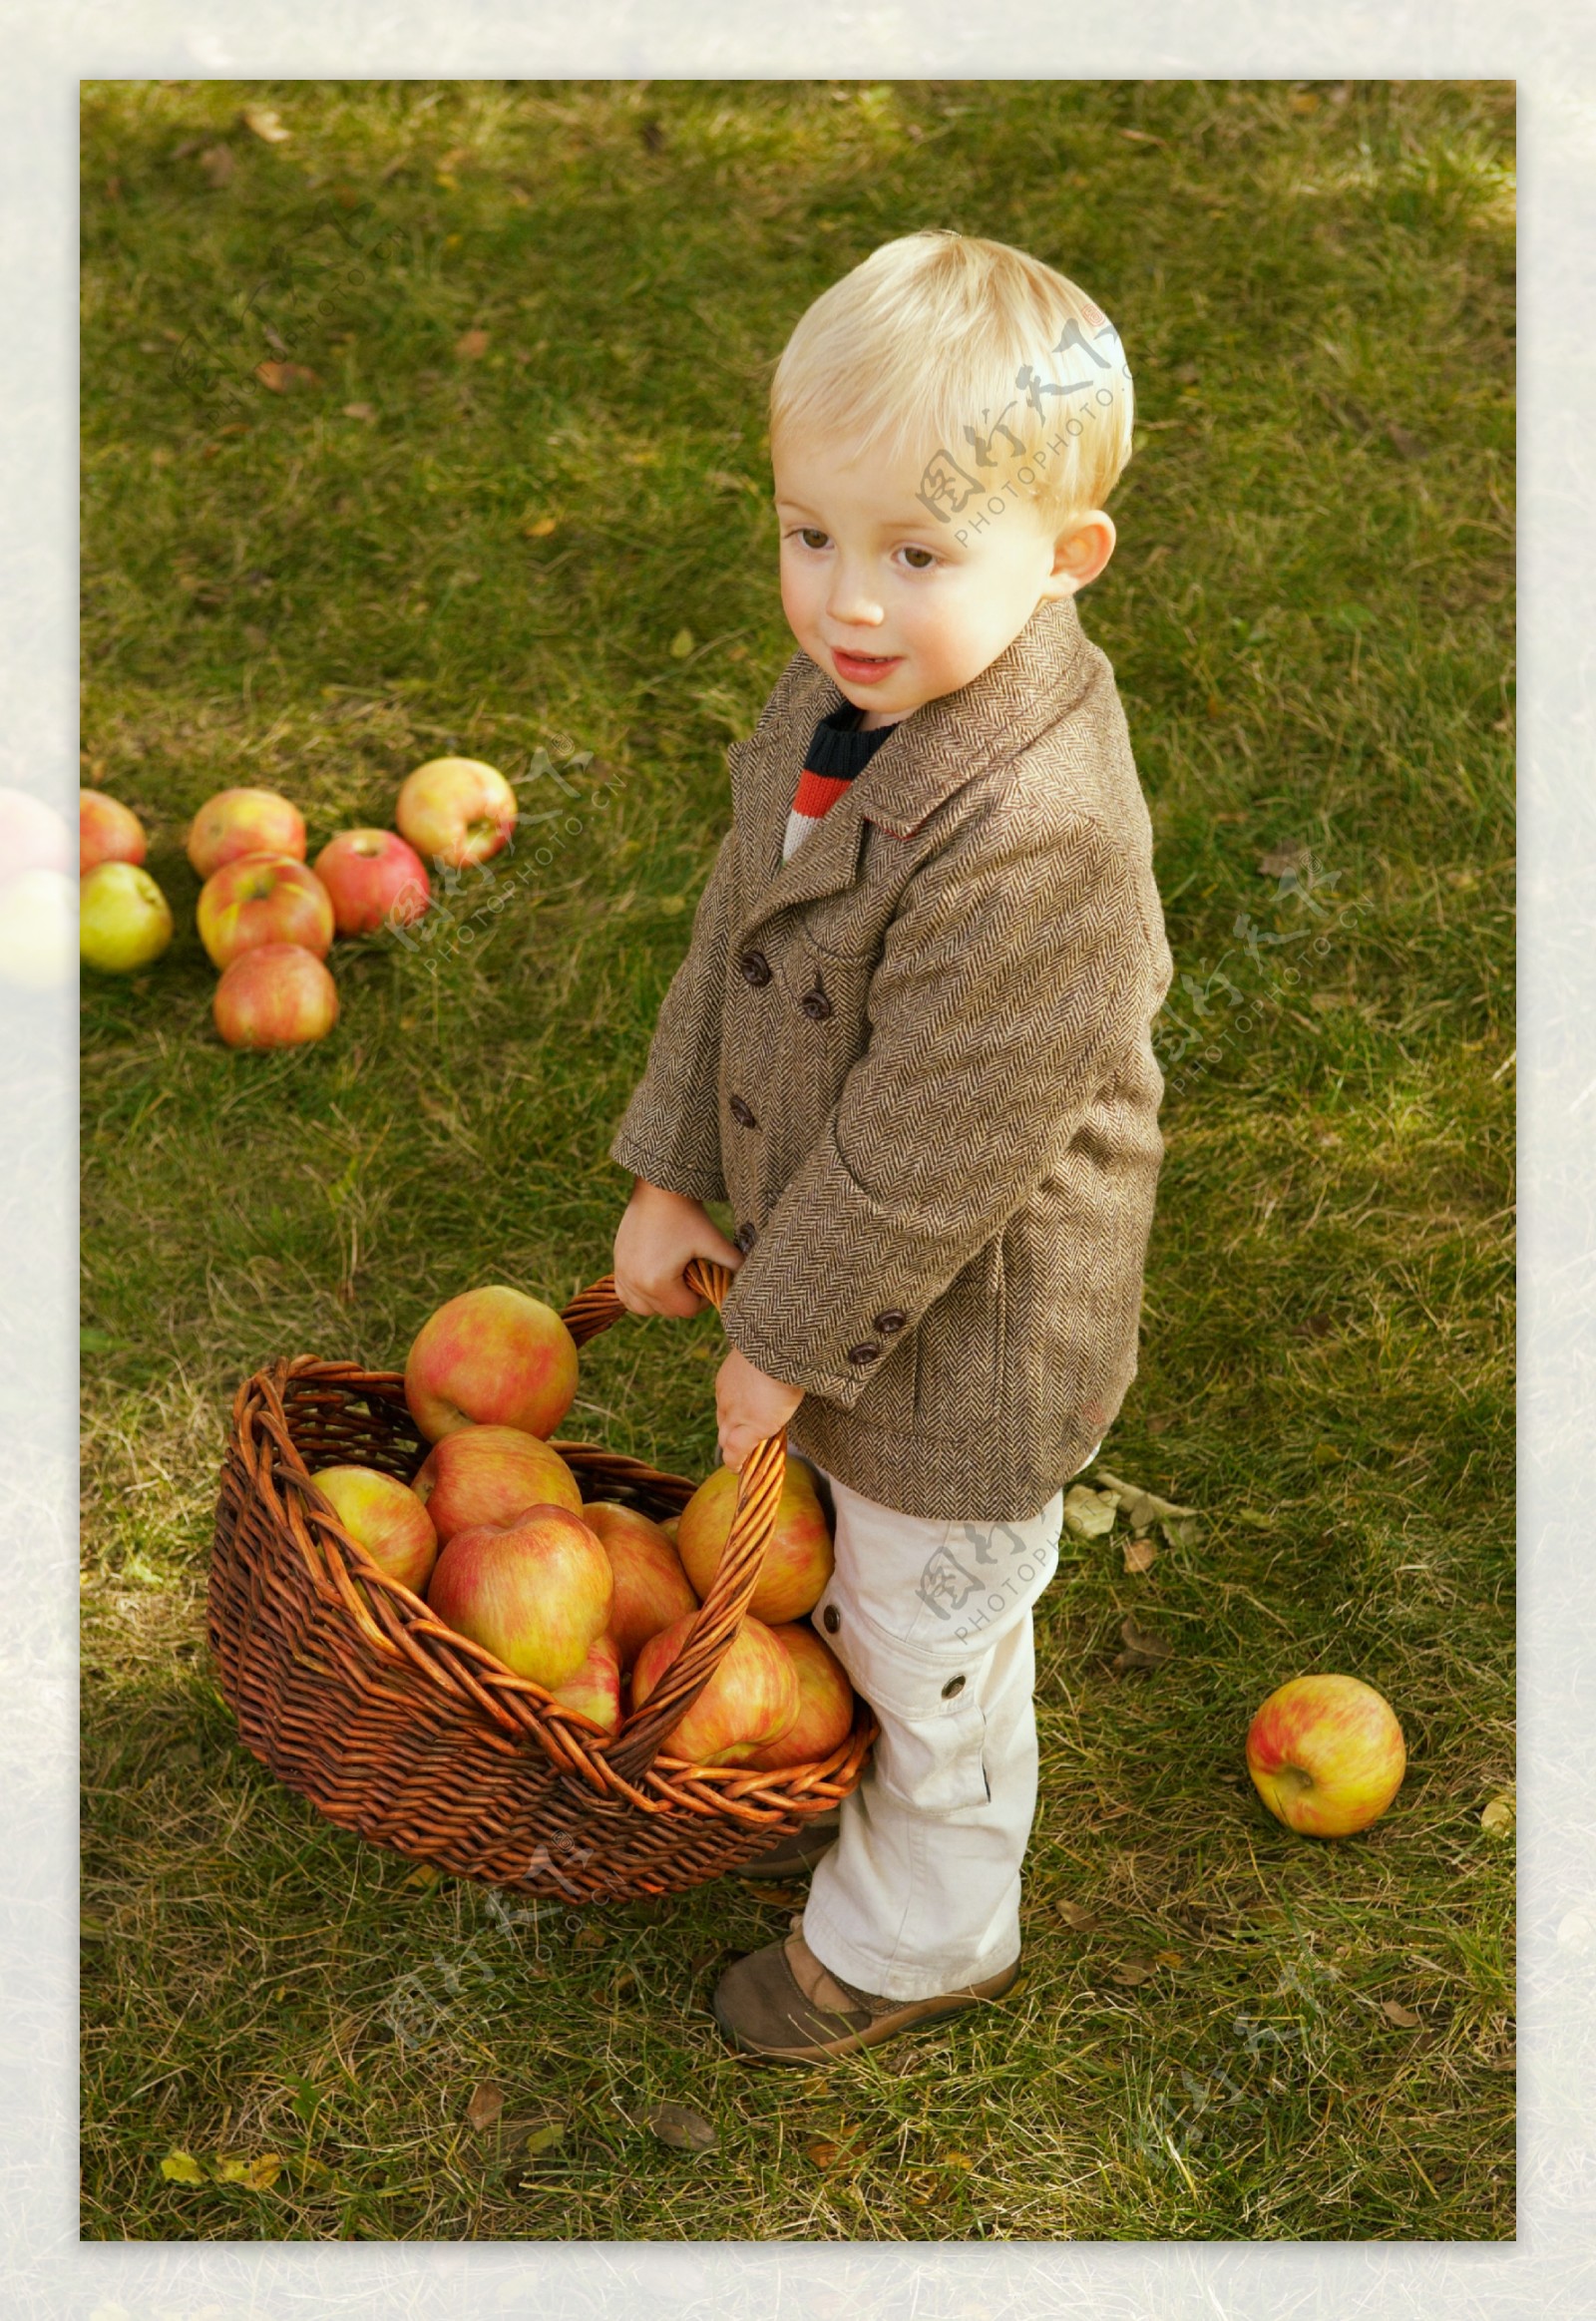 苹果与儿童图片